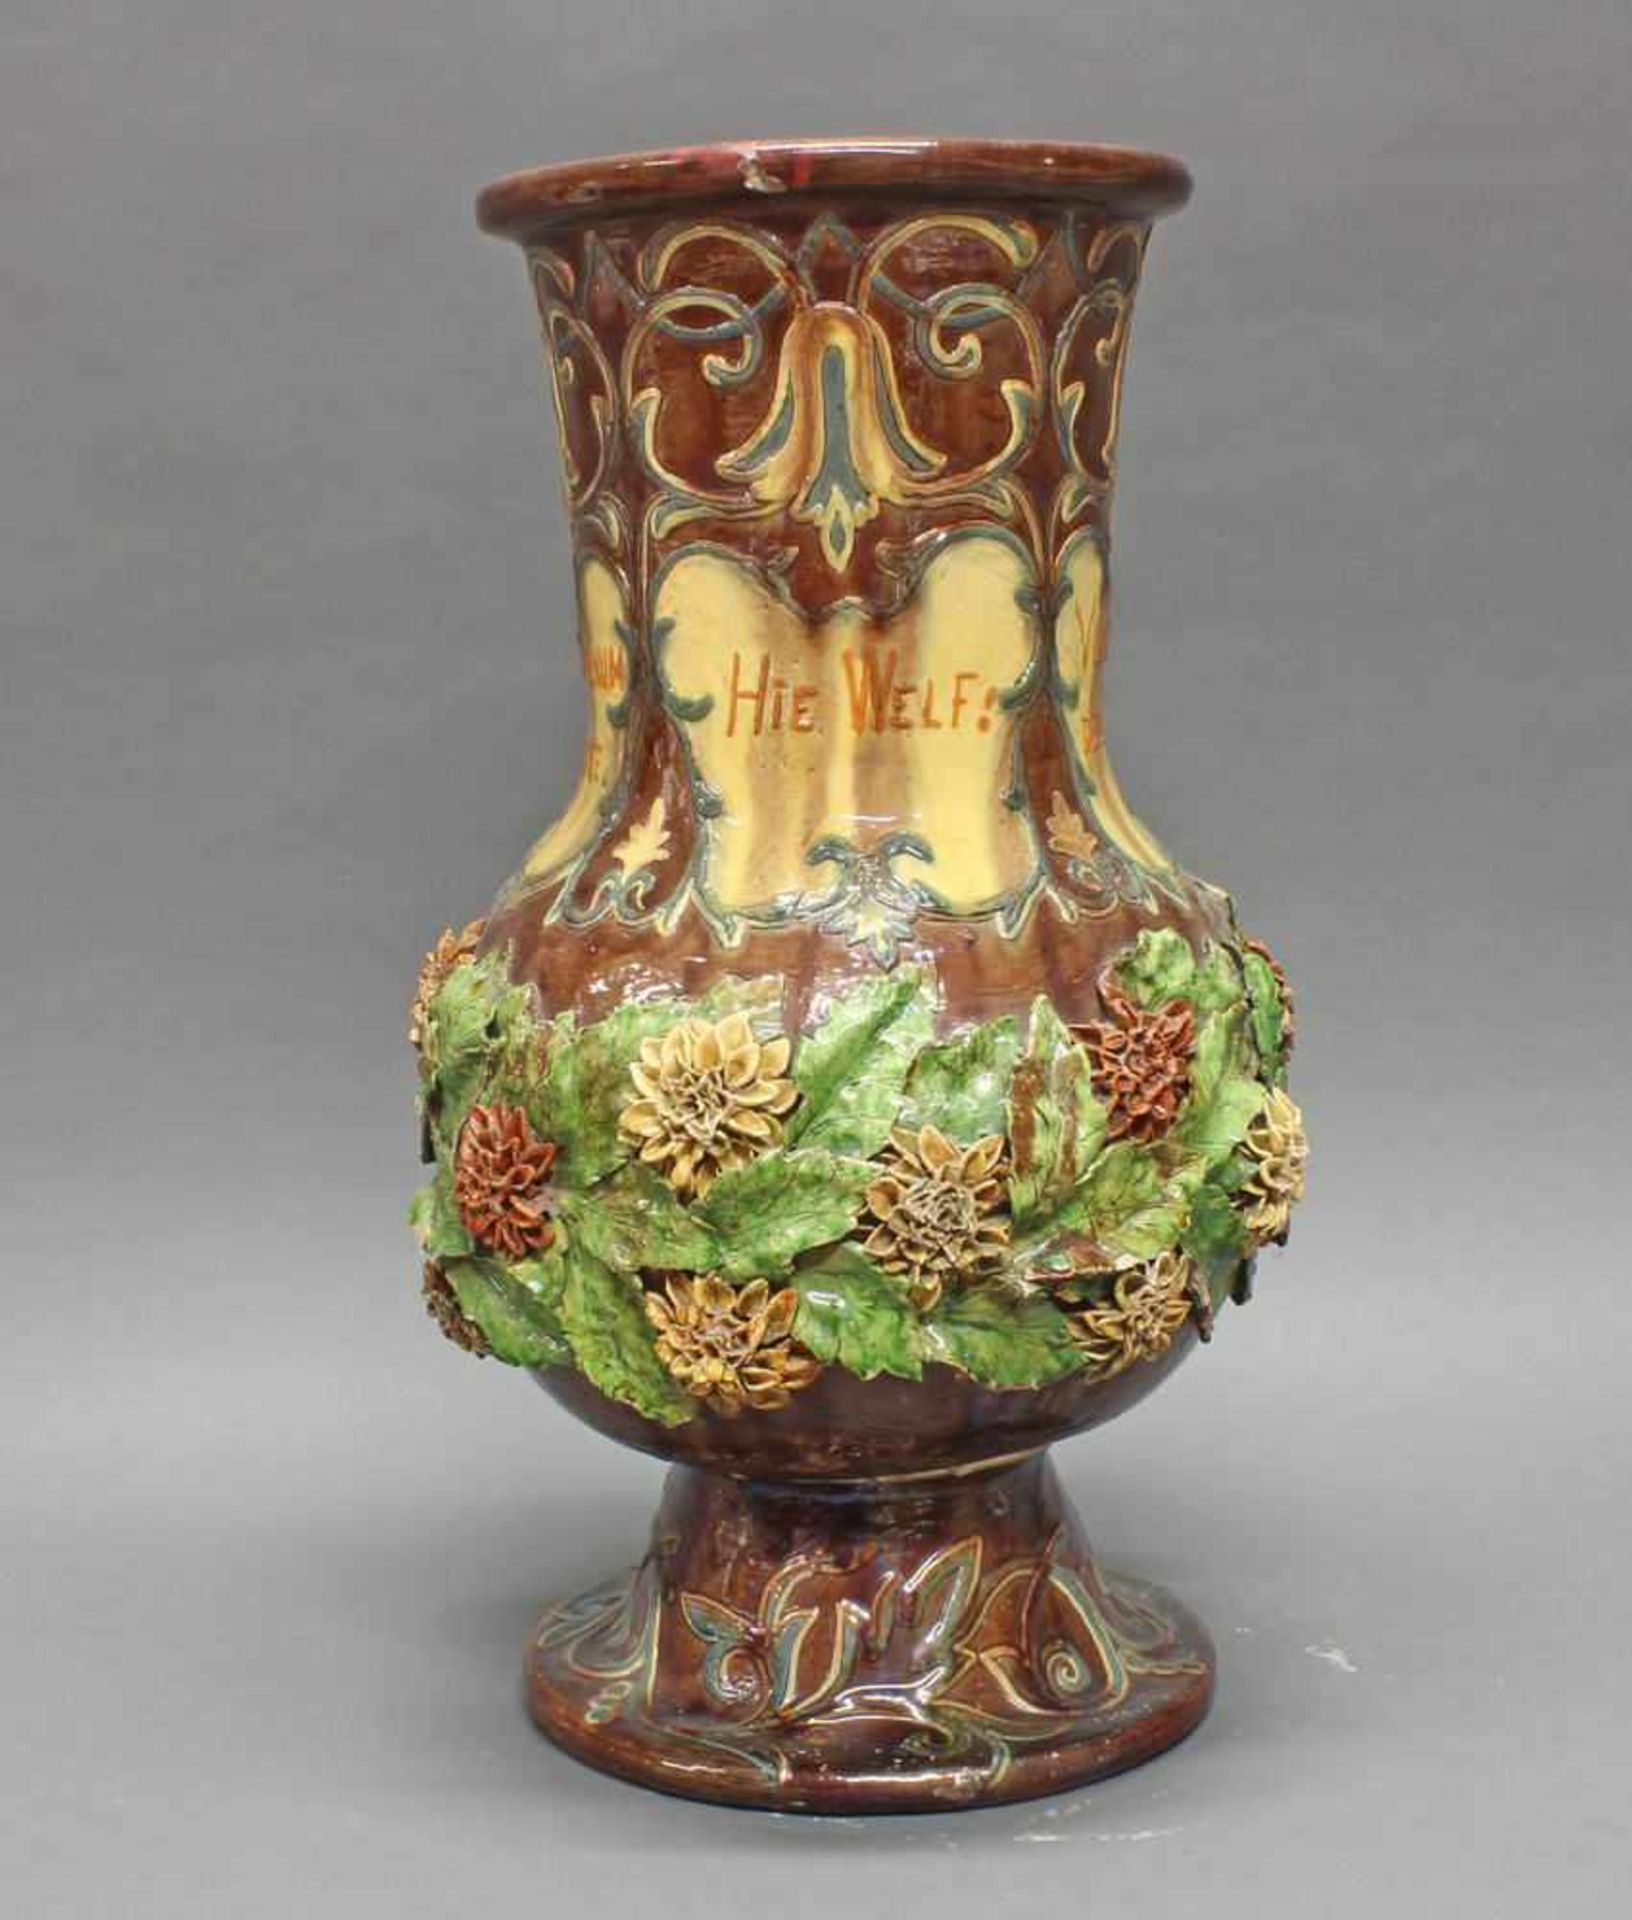 Vase, Keramik, Flandern, 1889, signiert L. Maes Thornhout 1889, polychrom, mit aufgesetzten Blüten - Image 8 of 10